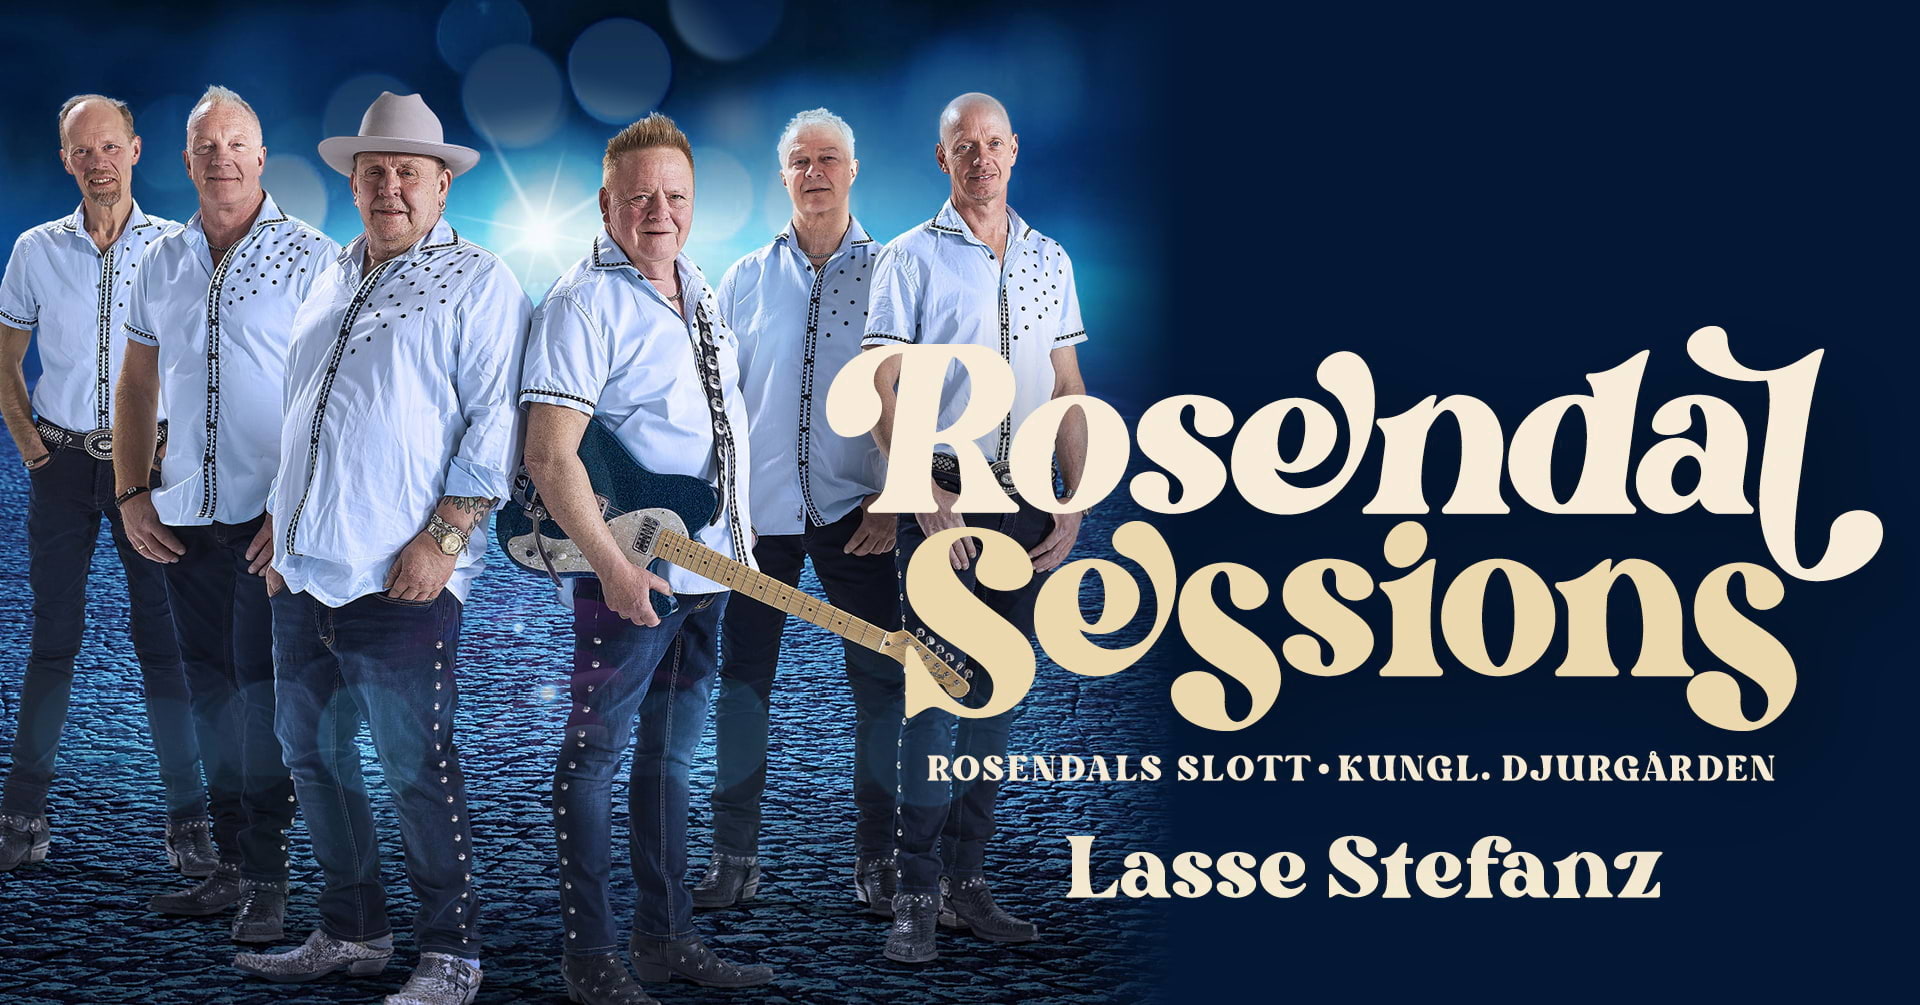 Lasse Stefanz på Rosendal Sessions 2023 | Stockholm, Rosendals Slott